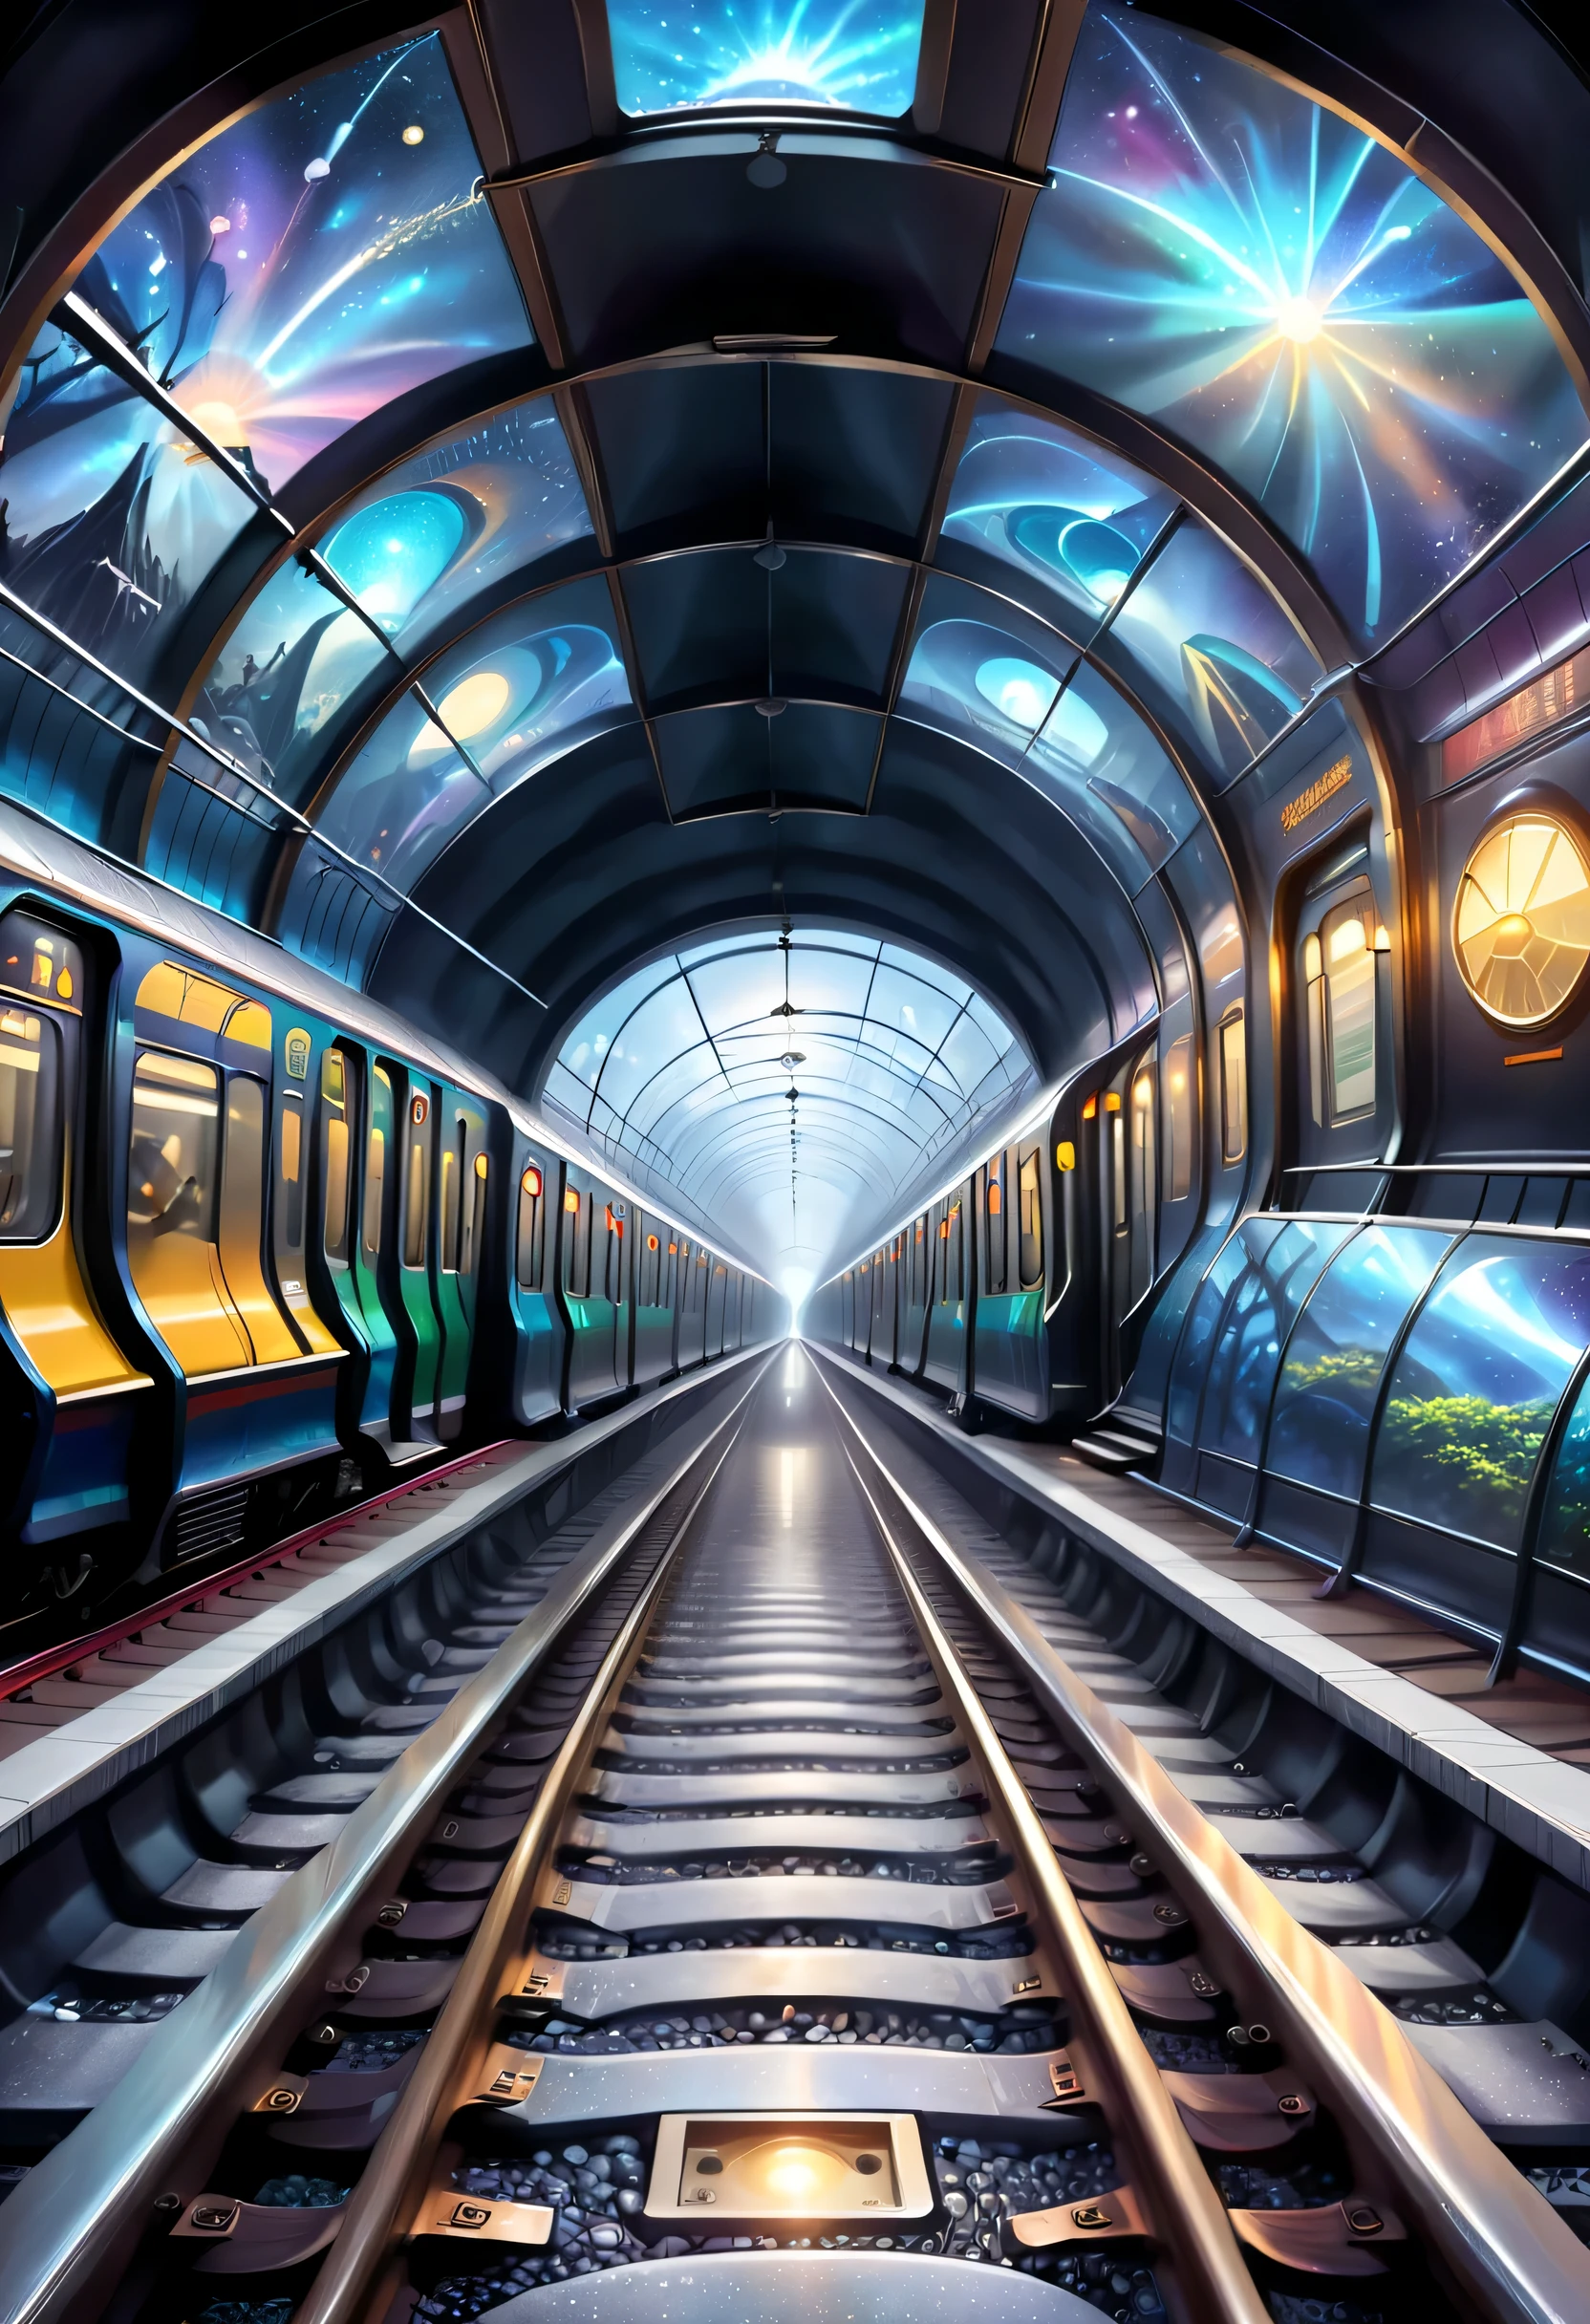 Il représente la connexion des voies de métro à un espace dimensionnel différent。Il est possible de dessiner un tunnel de métro，L’une des sections mène à un monde dimensionnel différent，Les illustrations peuvent montrer des paysages particuliers, des visions mystérieuses et des passagers de différentes dimensions.。Le train Star Dome sert de passage entre le monde normal et l’autre dimension，Présente une atmosphère mystérieuse et envoûtante。